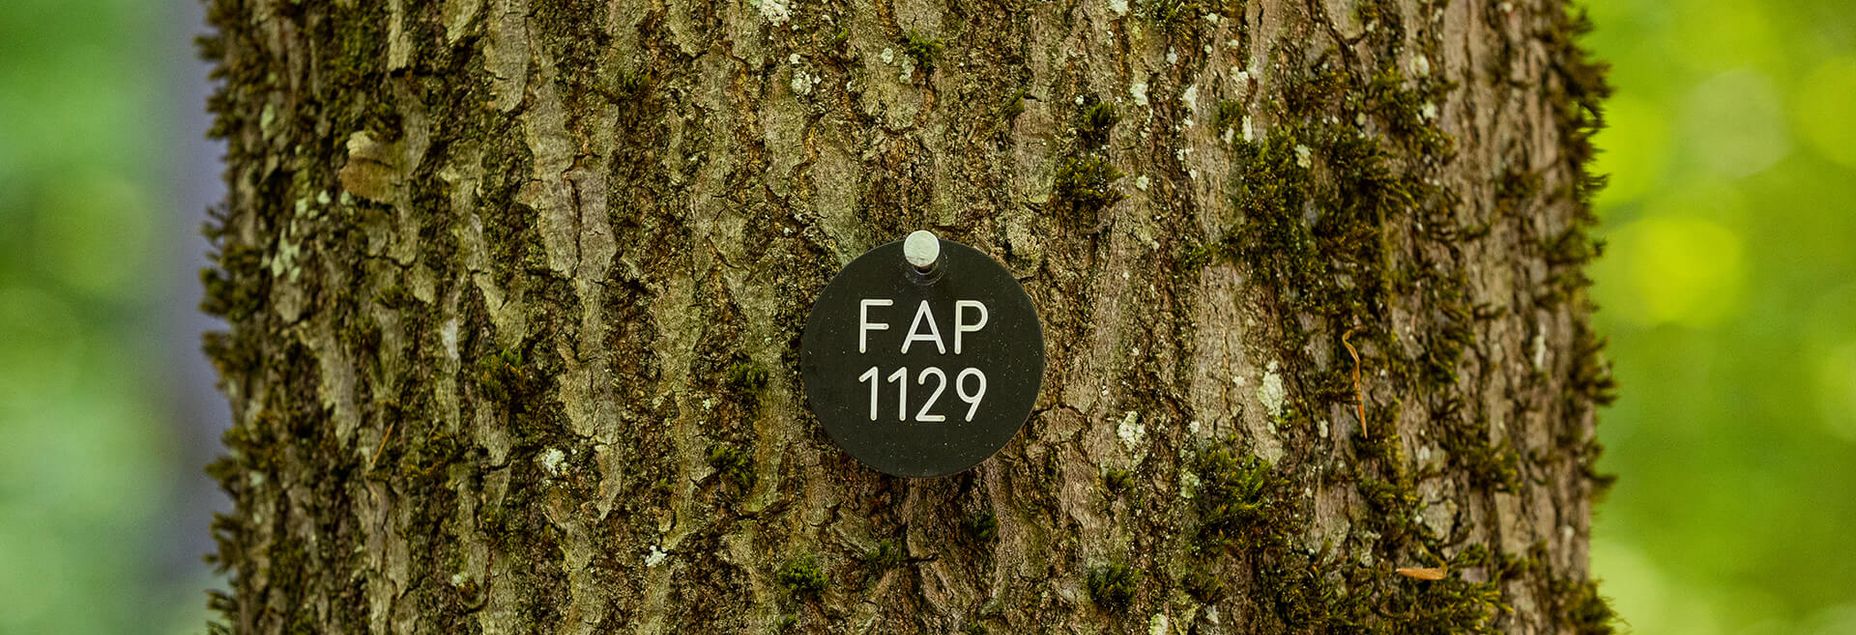 FriedWald-Onlineshop FAP 1129